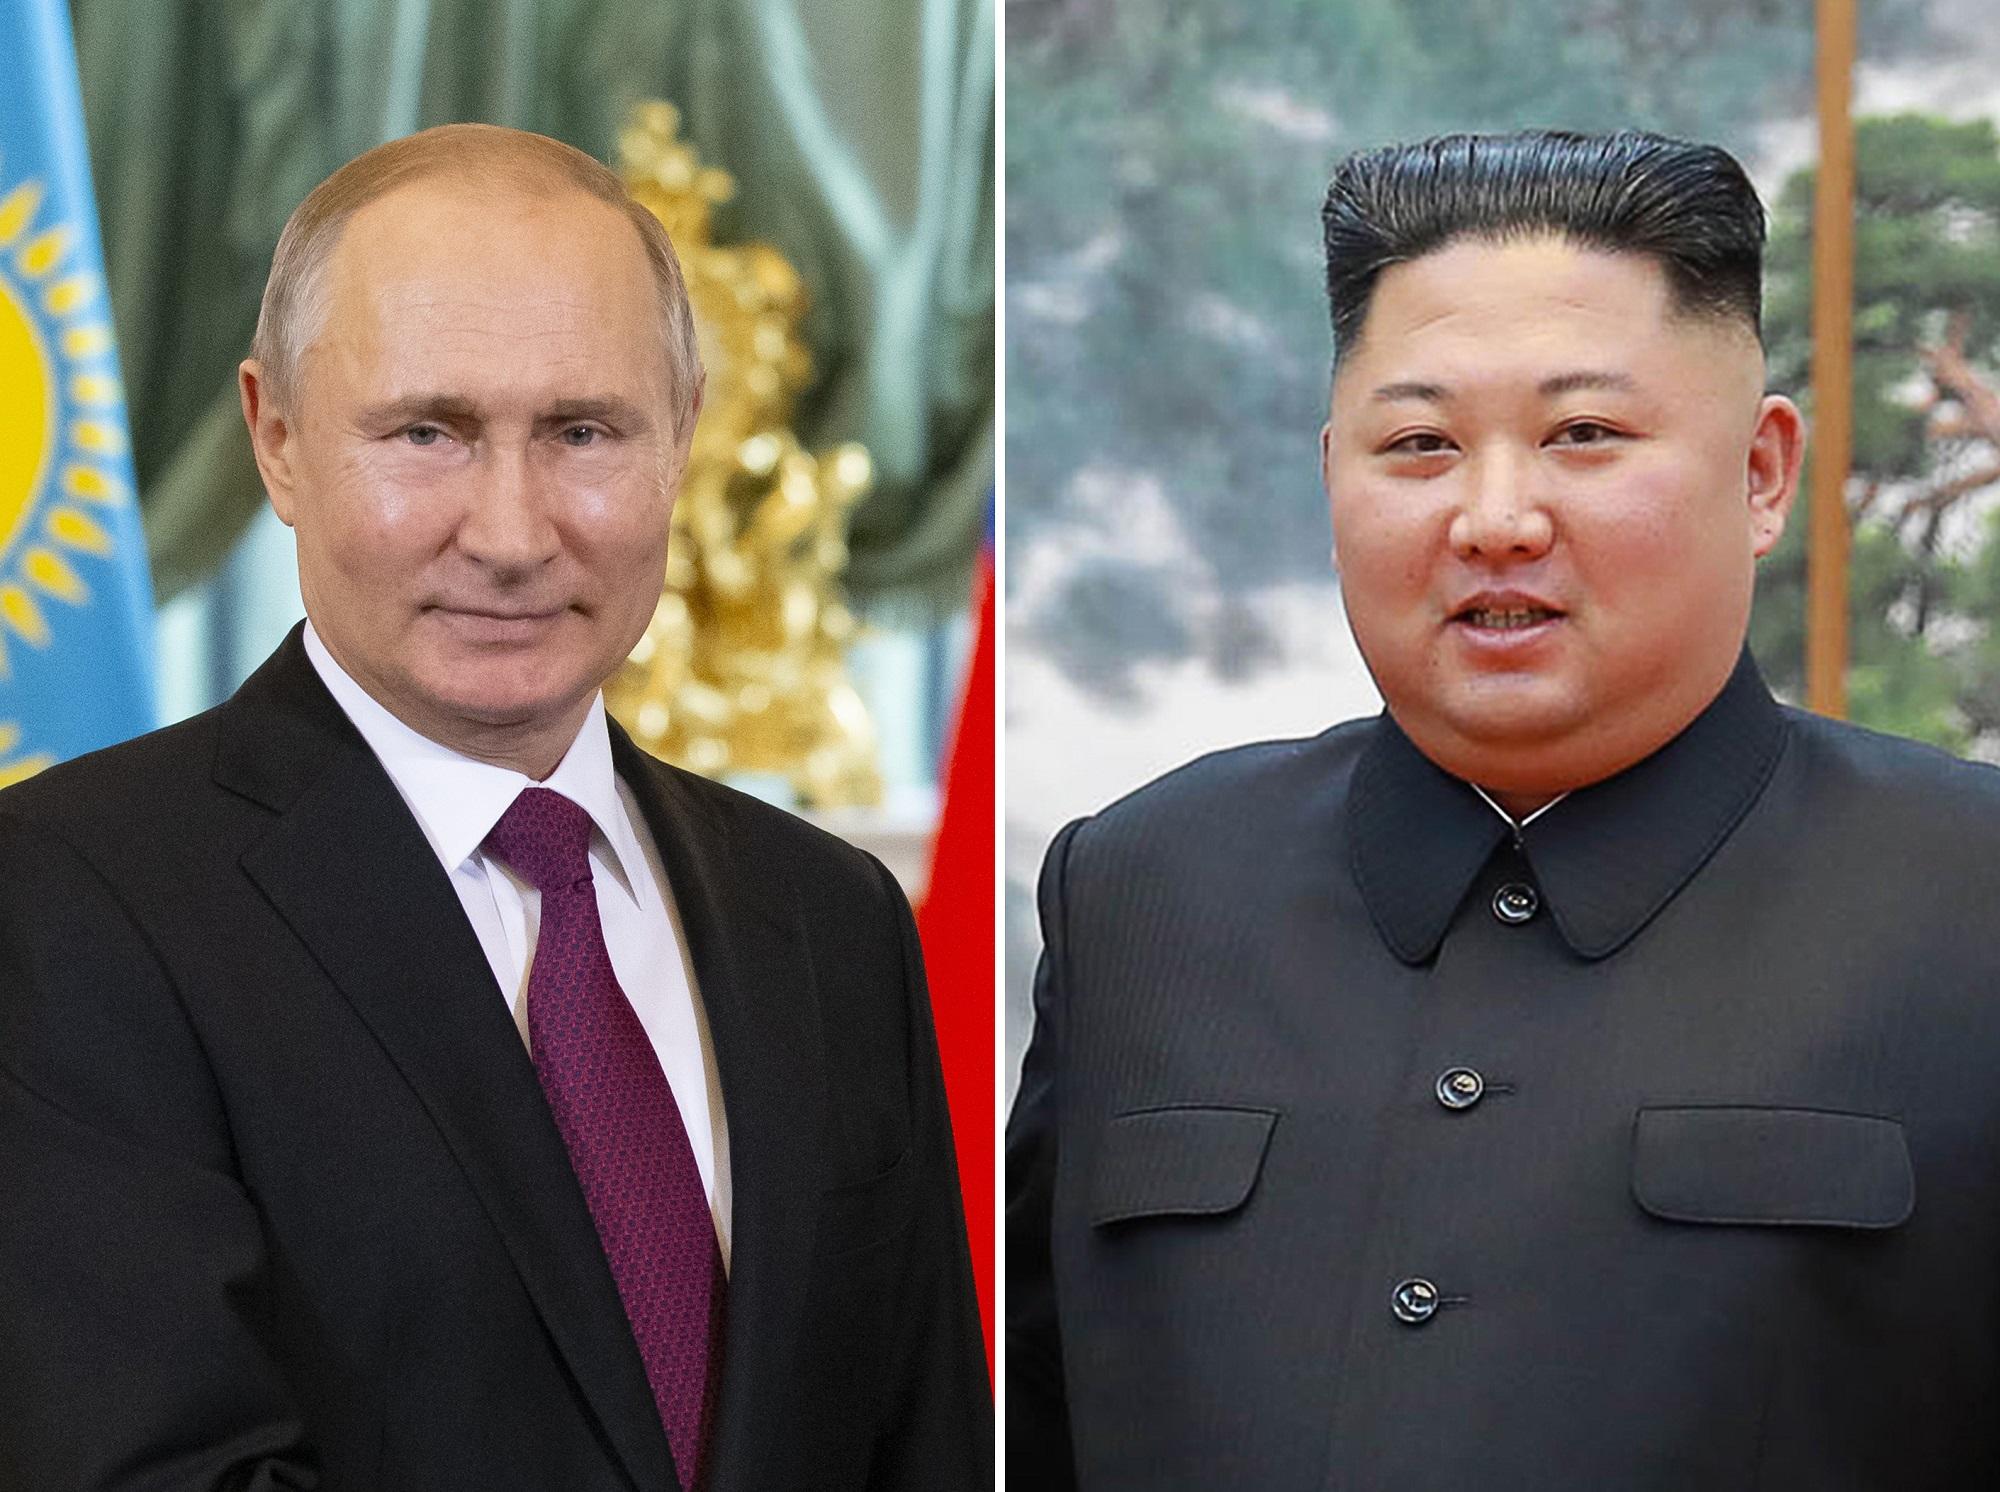 صورة أرشيفية للزعيمين الروسي فلاديمير بوتين والكوري الشمالي كيم جونغ أون. أ ف ب 